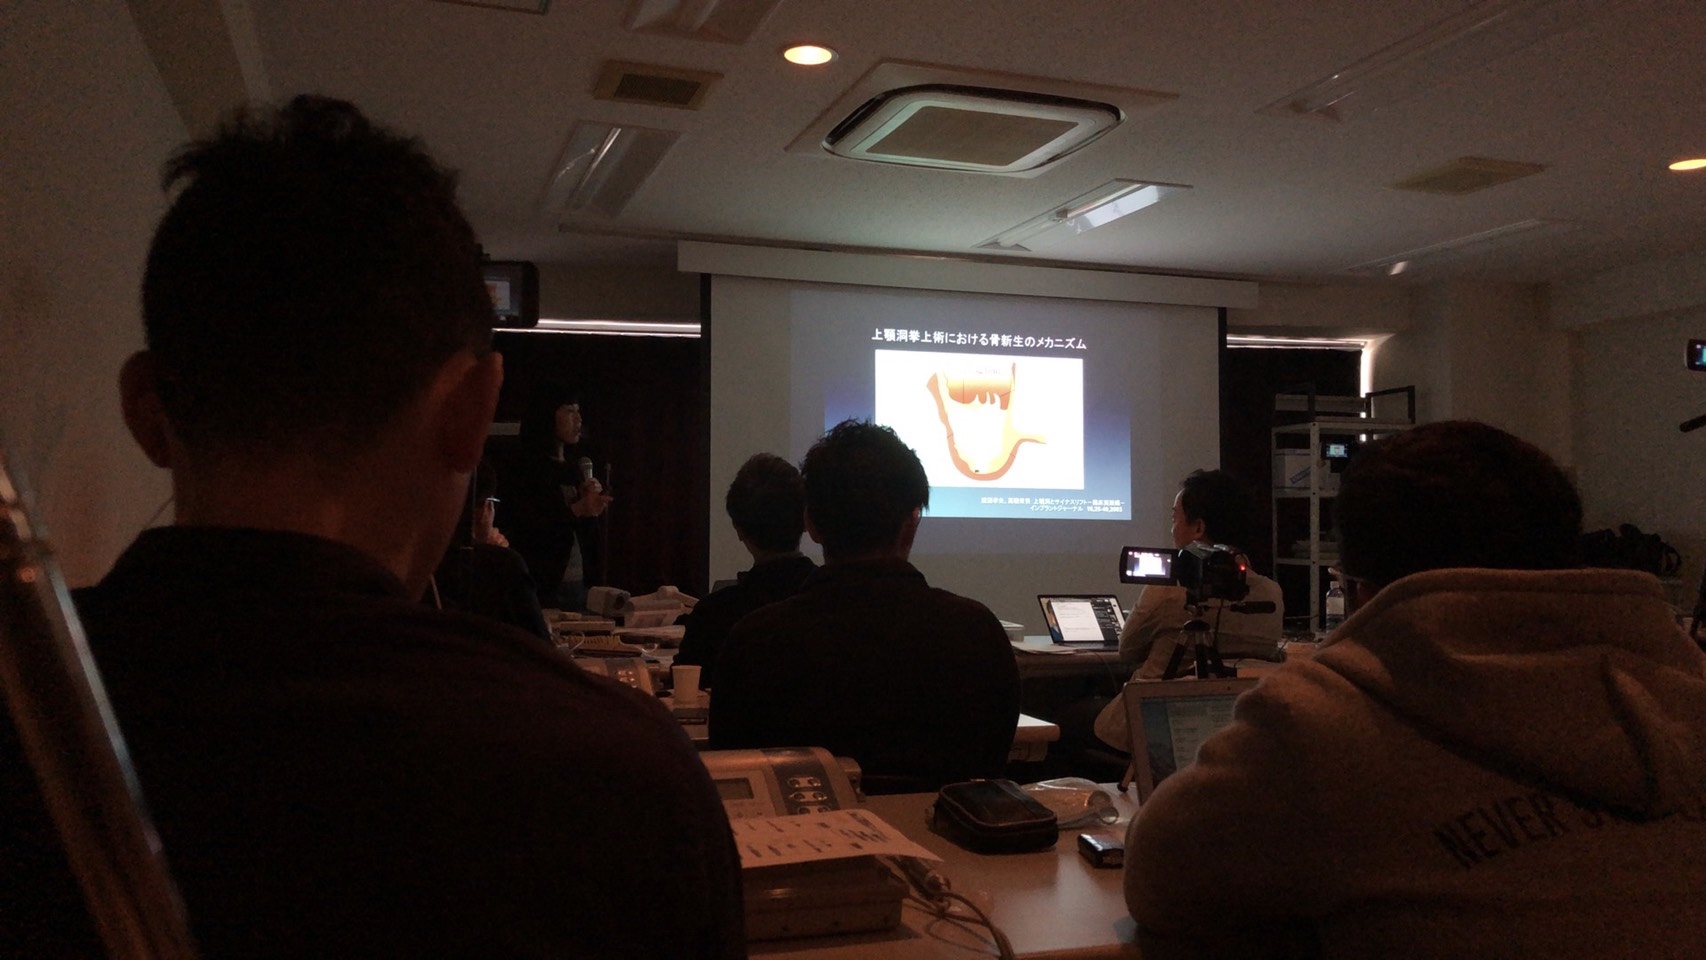 大阪で歯周病とインプラントの勉強